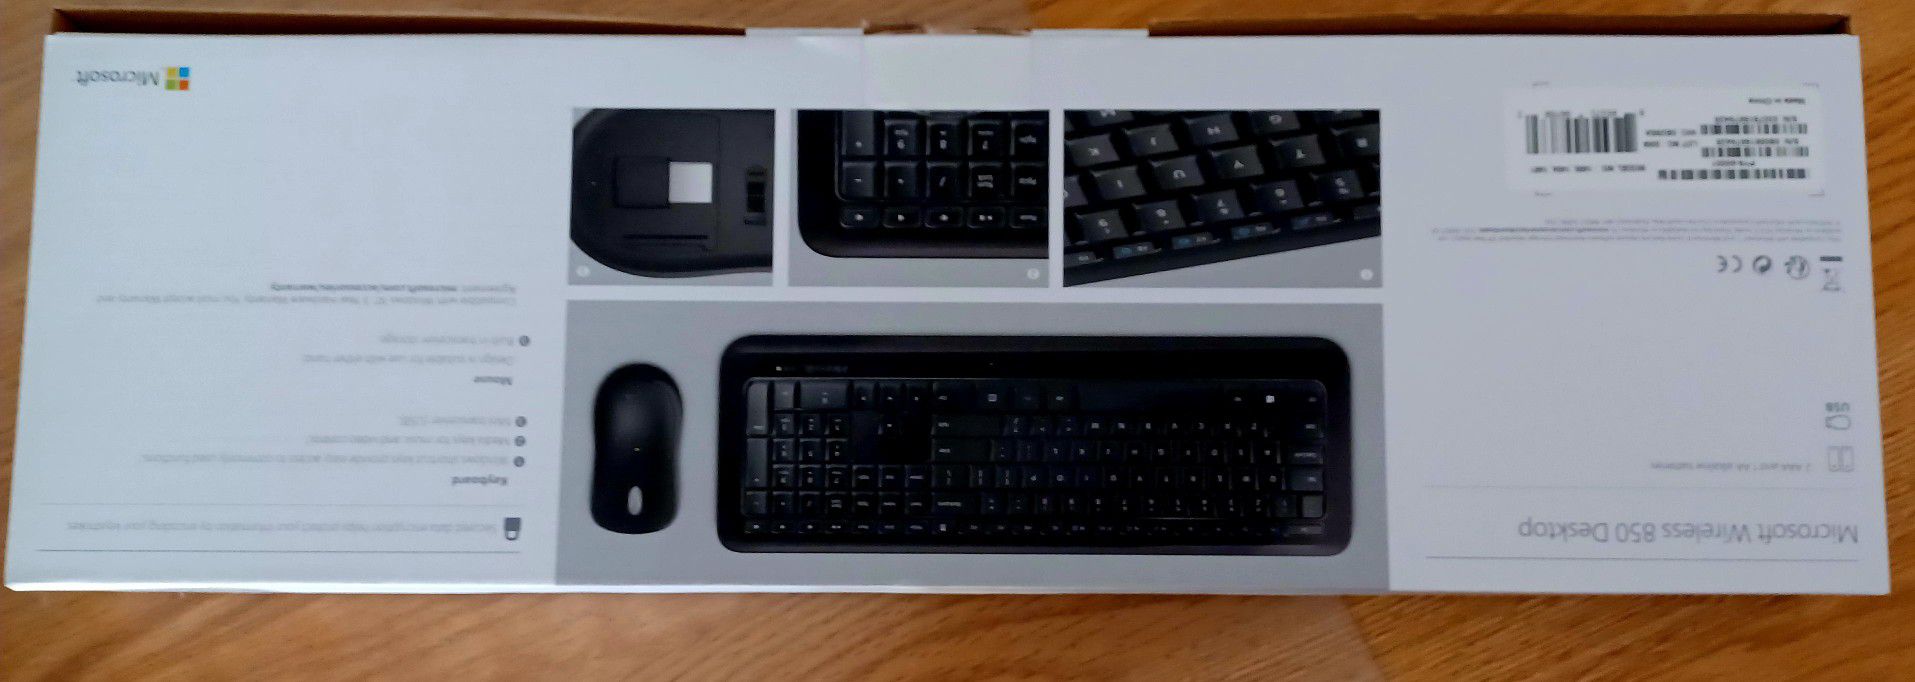 Microsoft Wireless 850 Desktop Keyboard Mouse